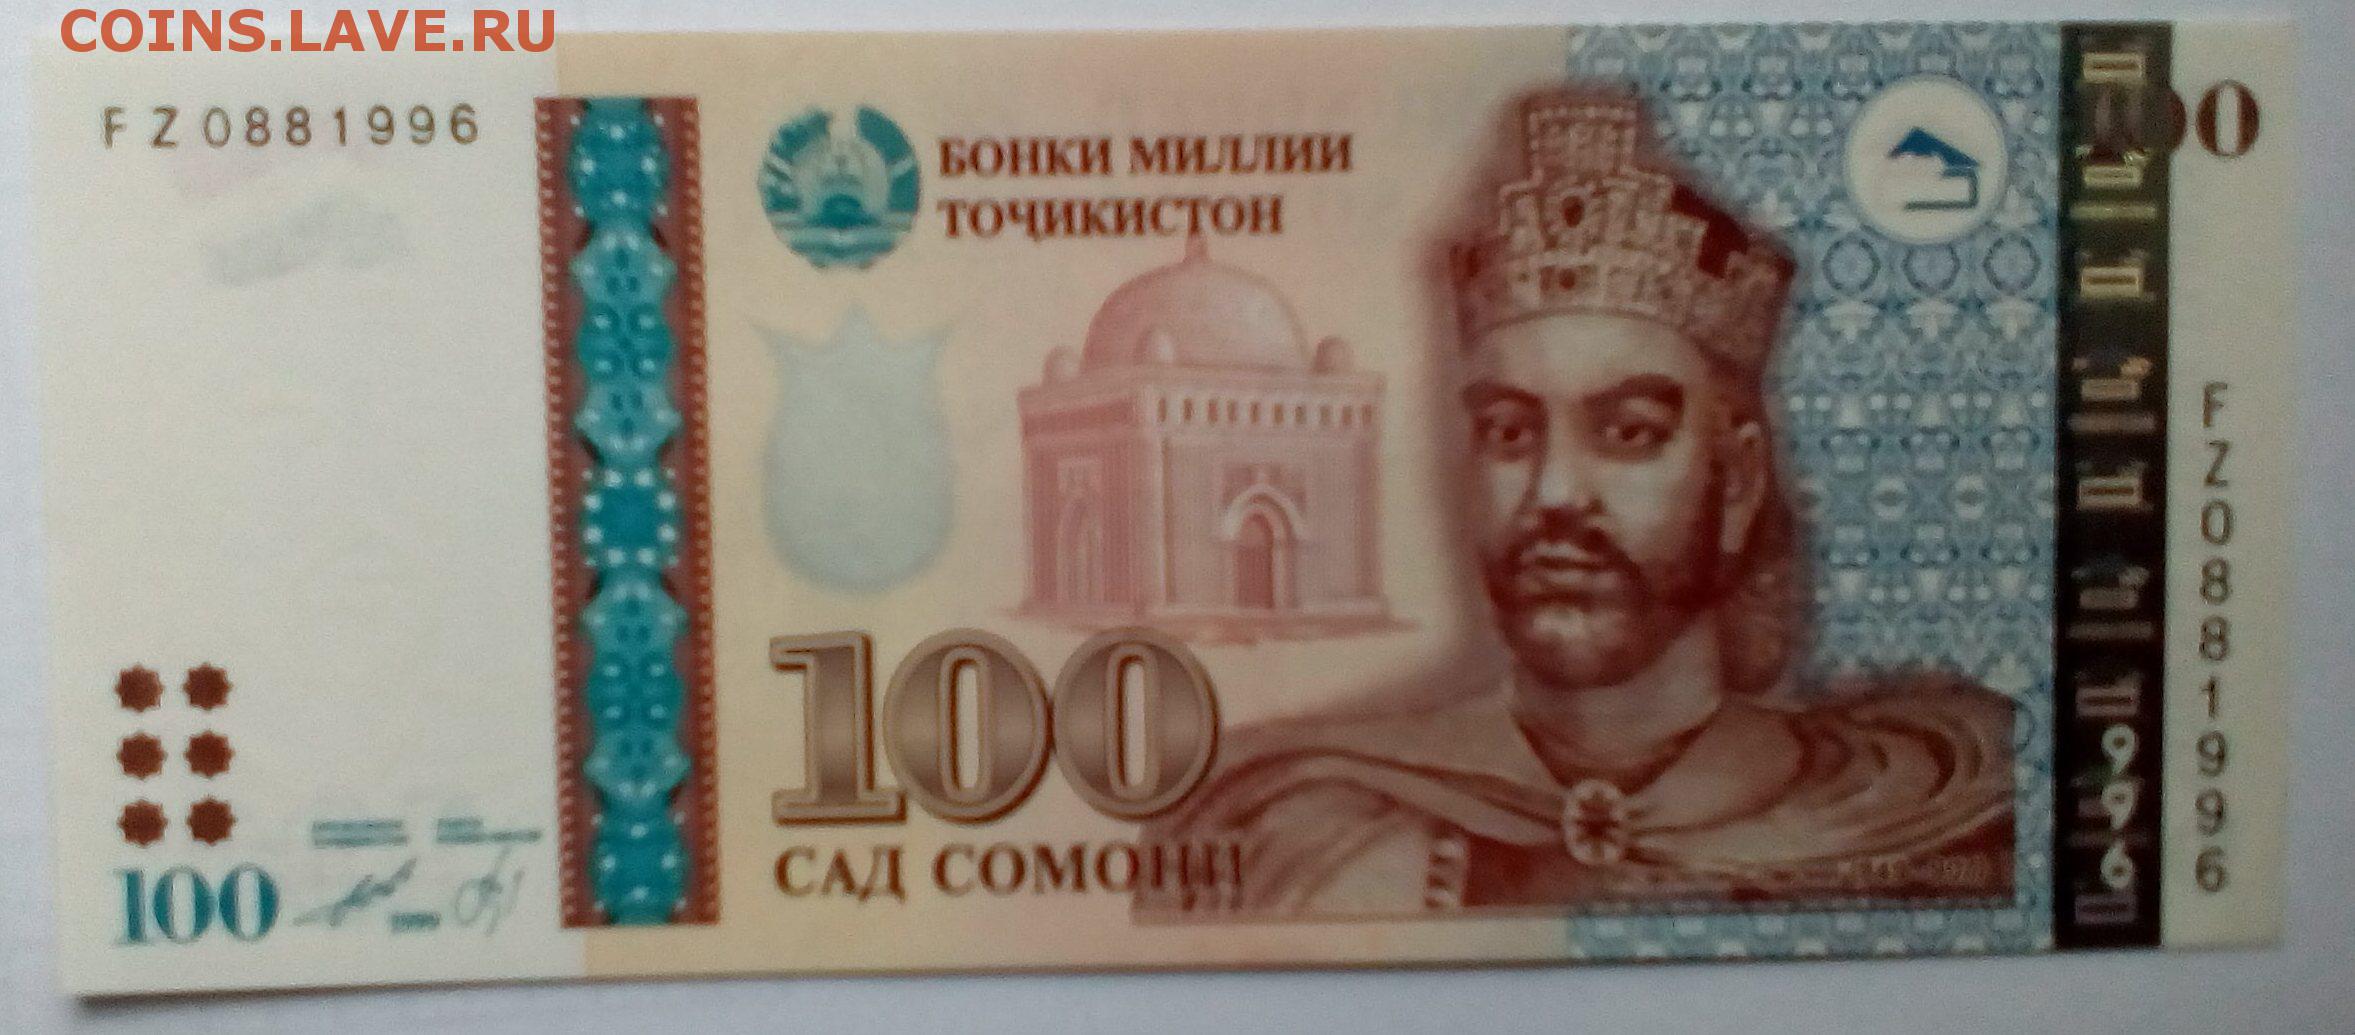 500000 рублей в таджикских сомони. Купюра 100 Сомони. Купюры Таджикистана. Таджикский Сомони. Деньги Сомони.